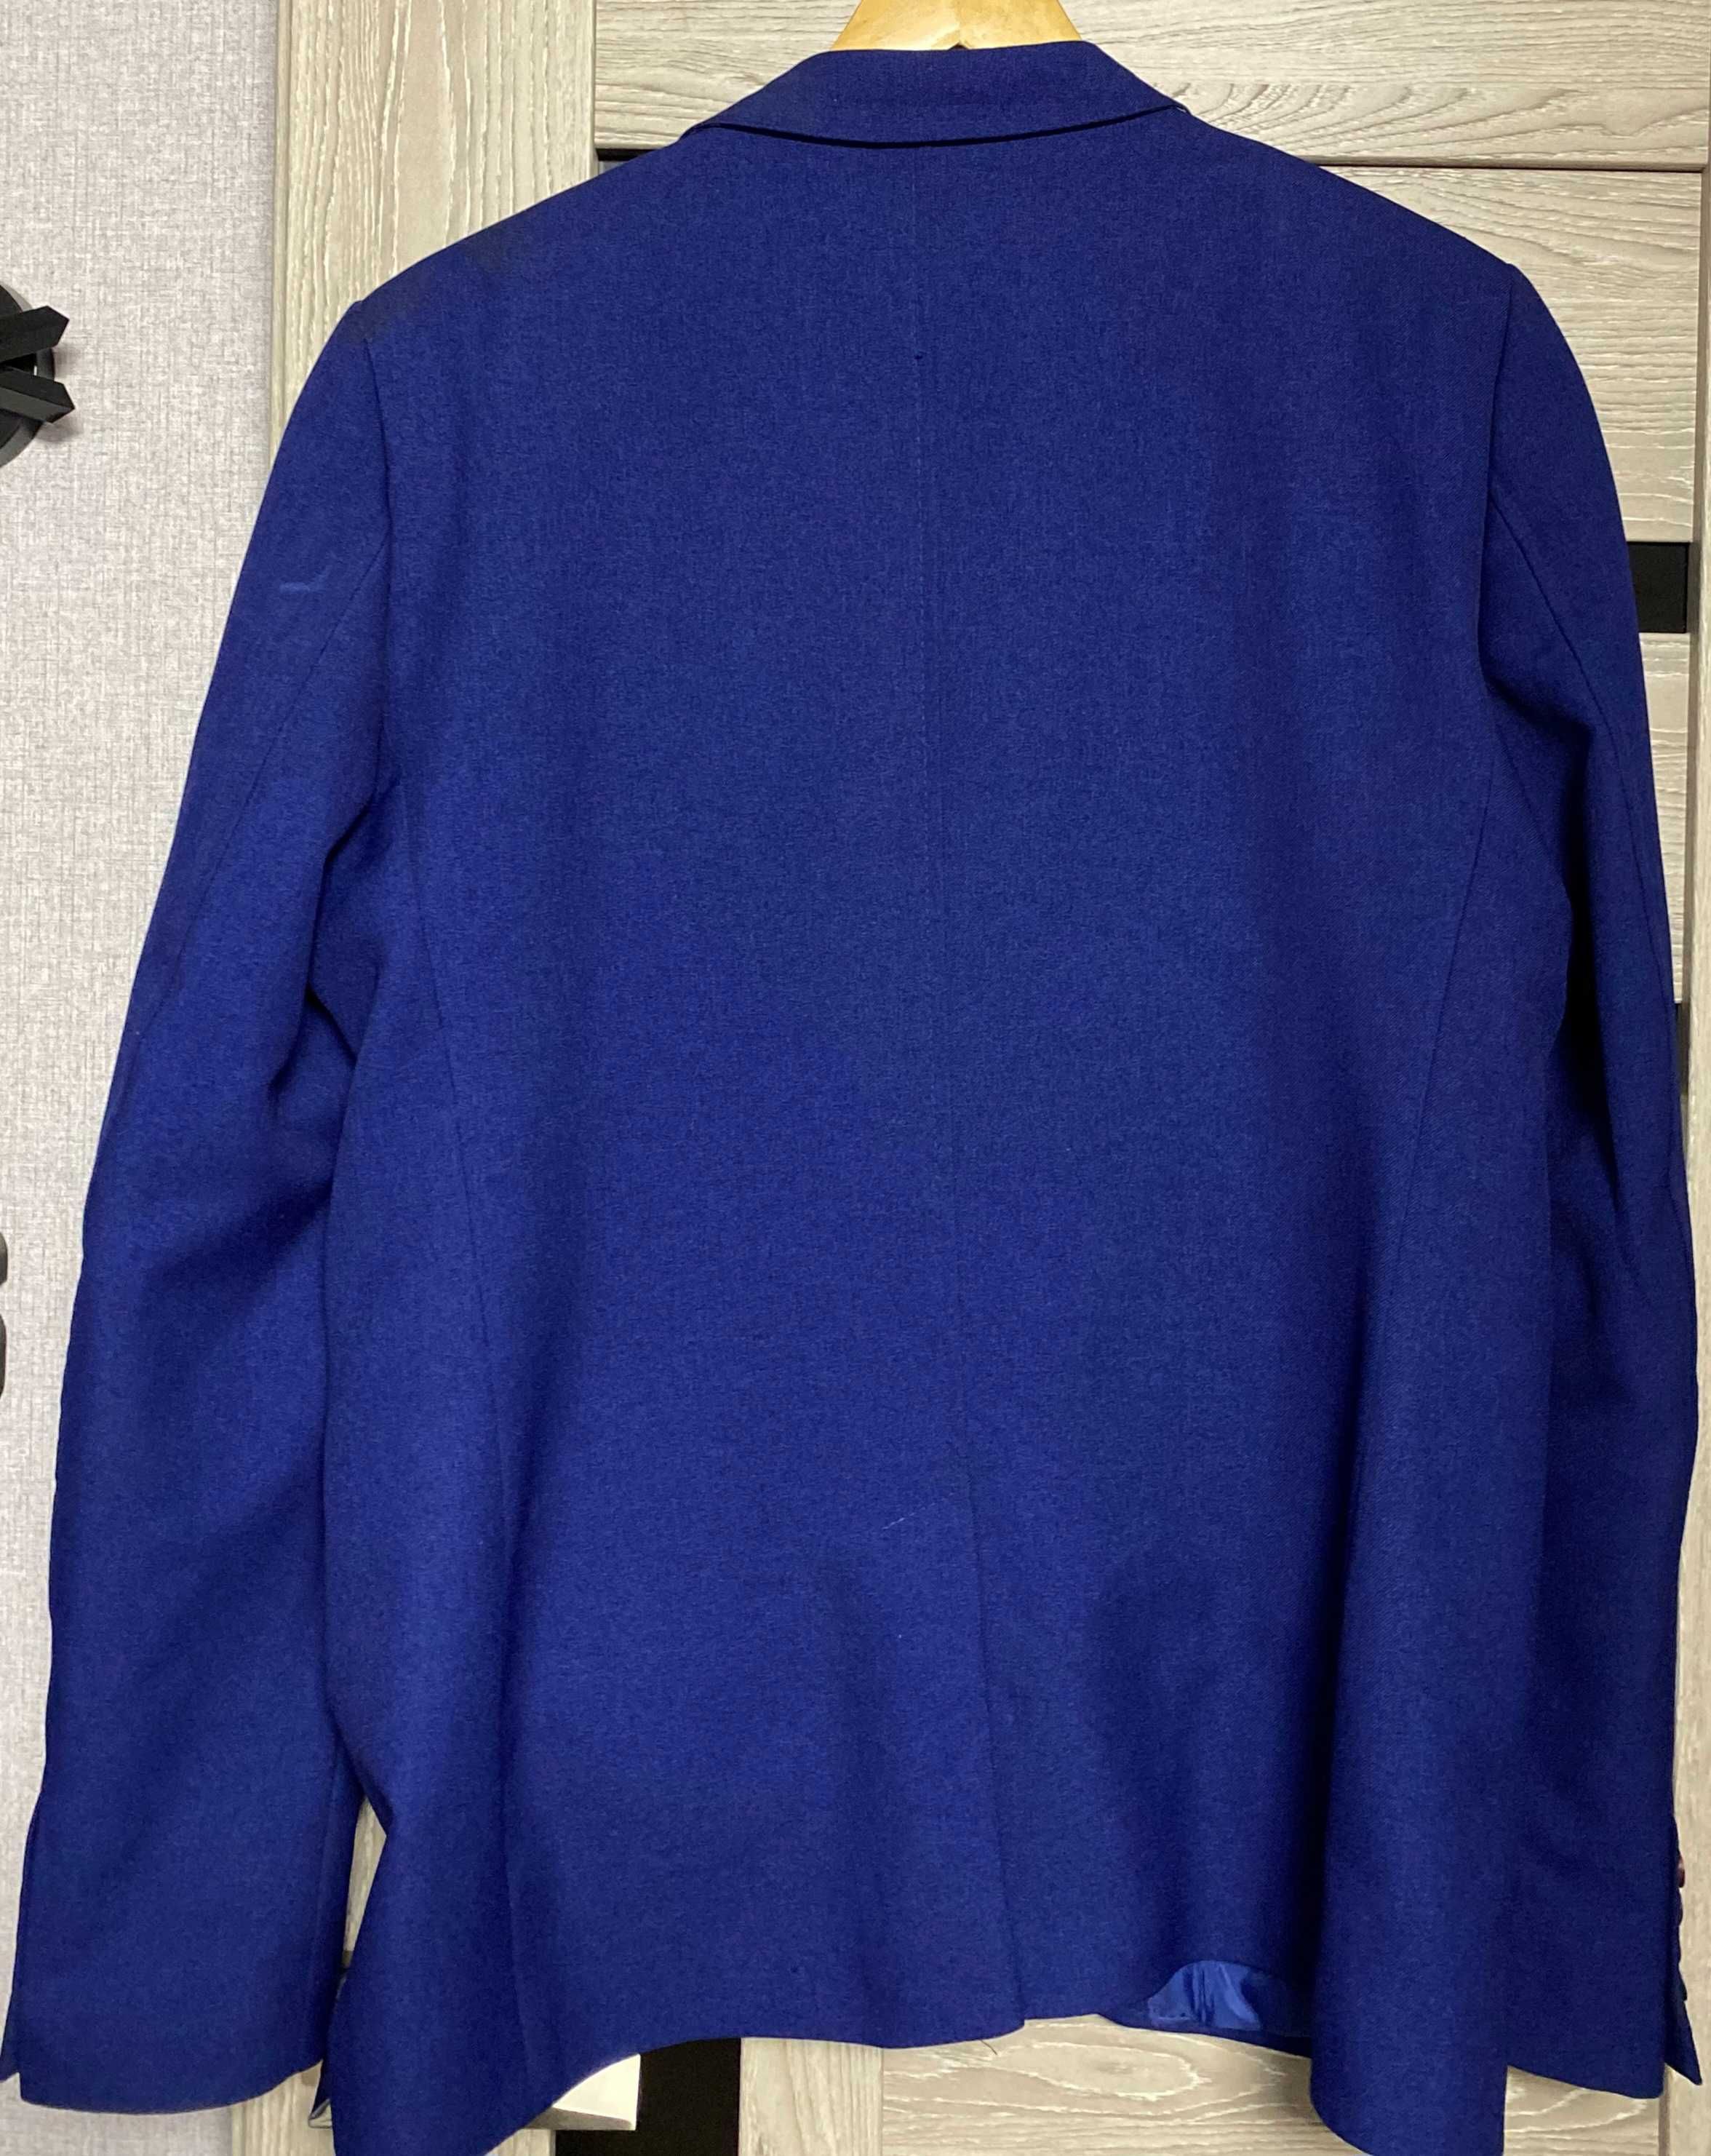 Чоловічий піджак Palmiro Rossi, 54 розмір